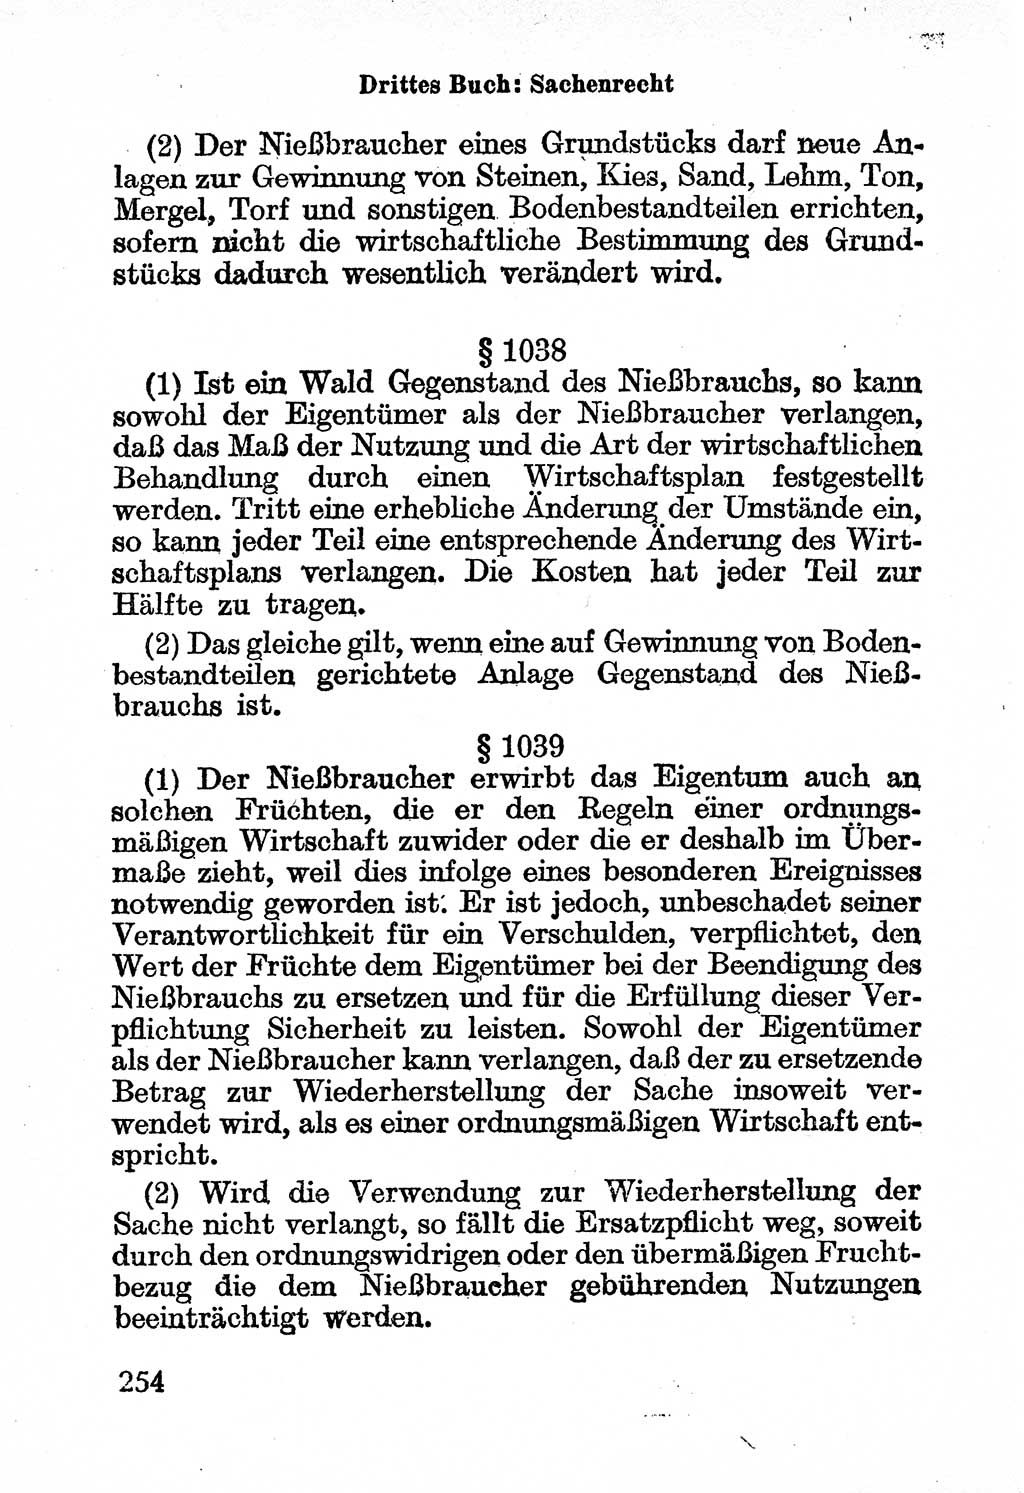 Bürgerliches Gesetzbuch (BGB) nebst wichtigen Nebengesetzen [Deutsche Demokratische Republik (DDR)] 1956, Seite 254 (BGB Nebenges. DDR 1956, S. 254)